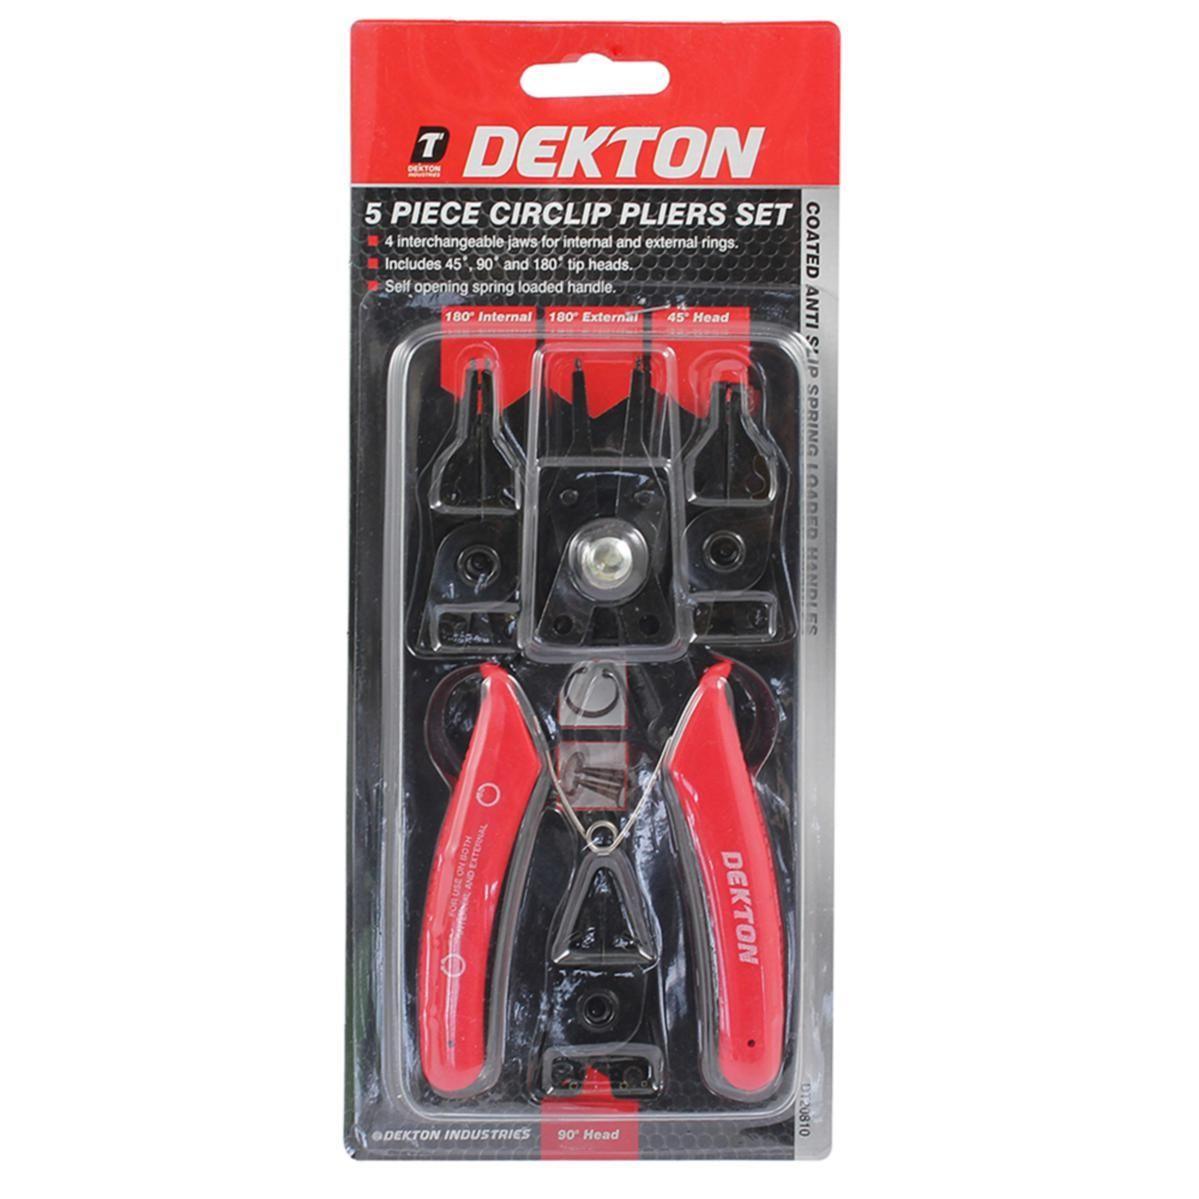 Dekton | 5 Piece Circlip Pliers Set DT20810 - Choice Stores